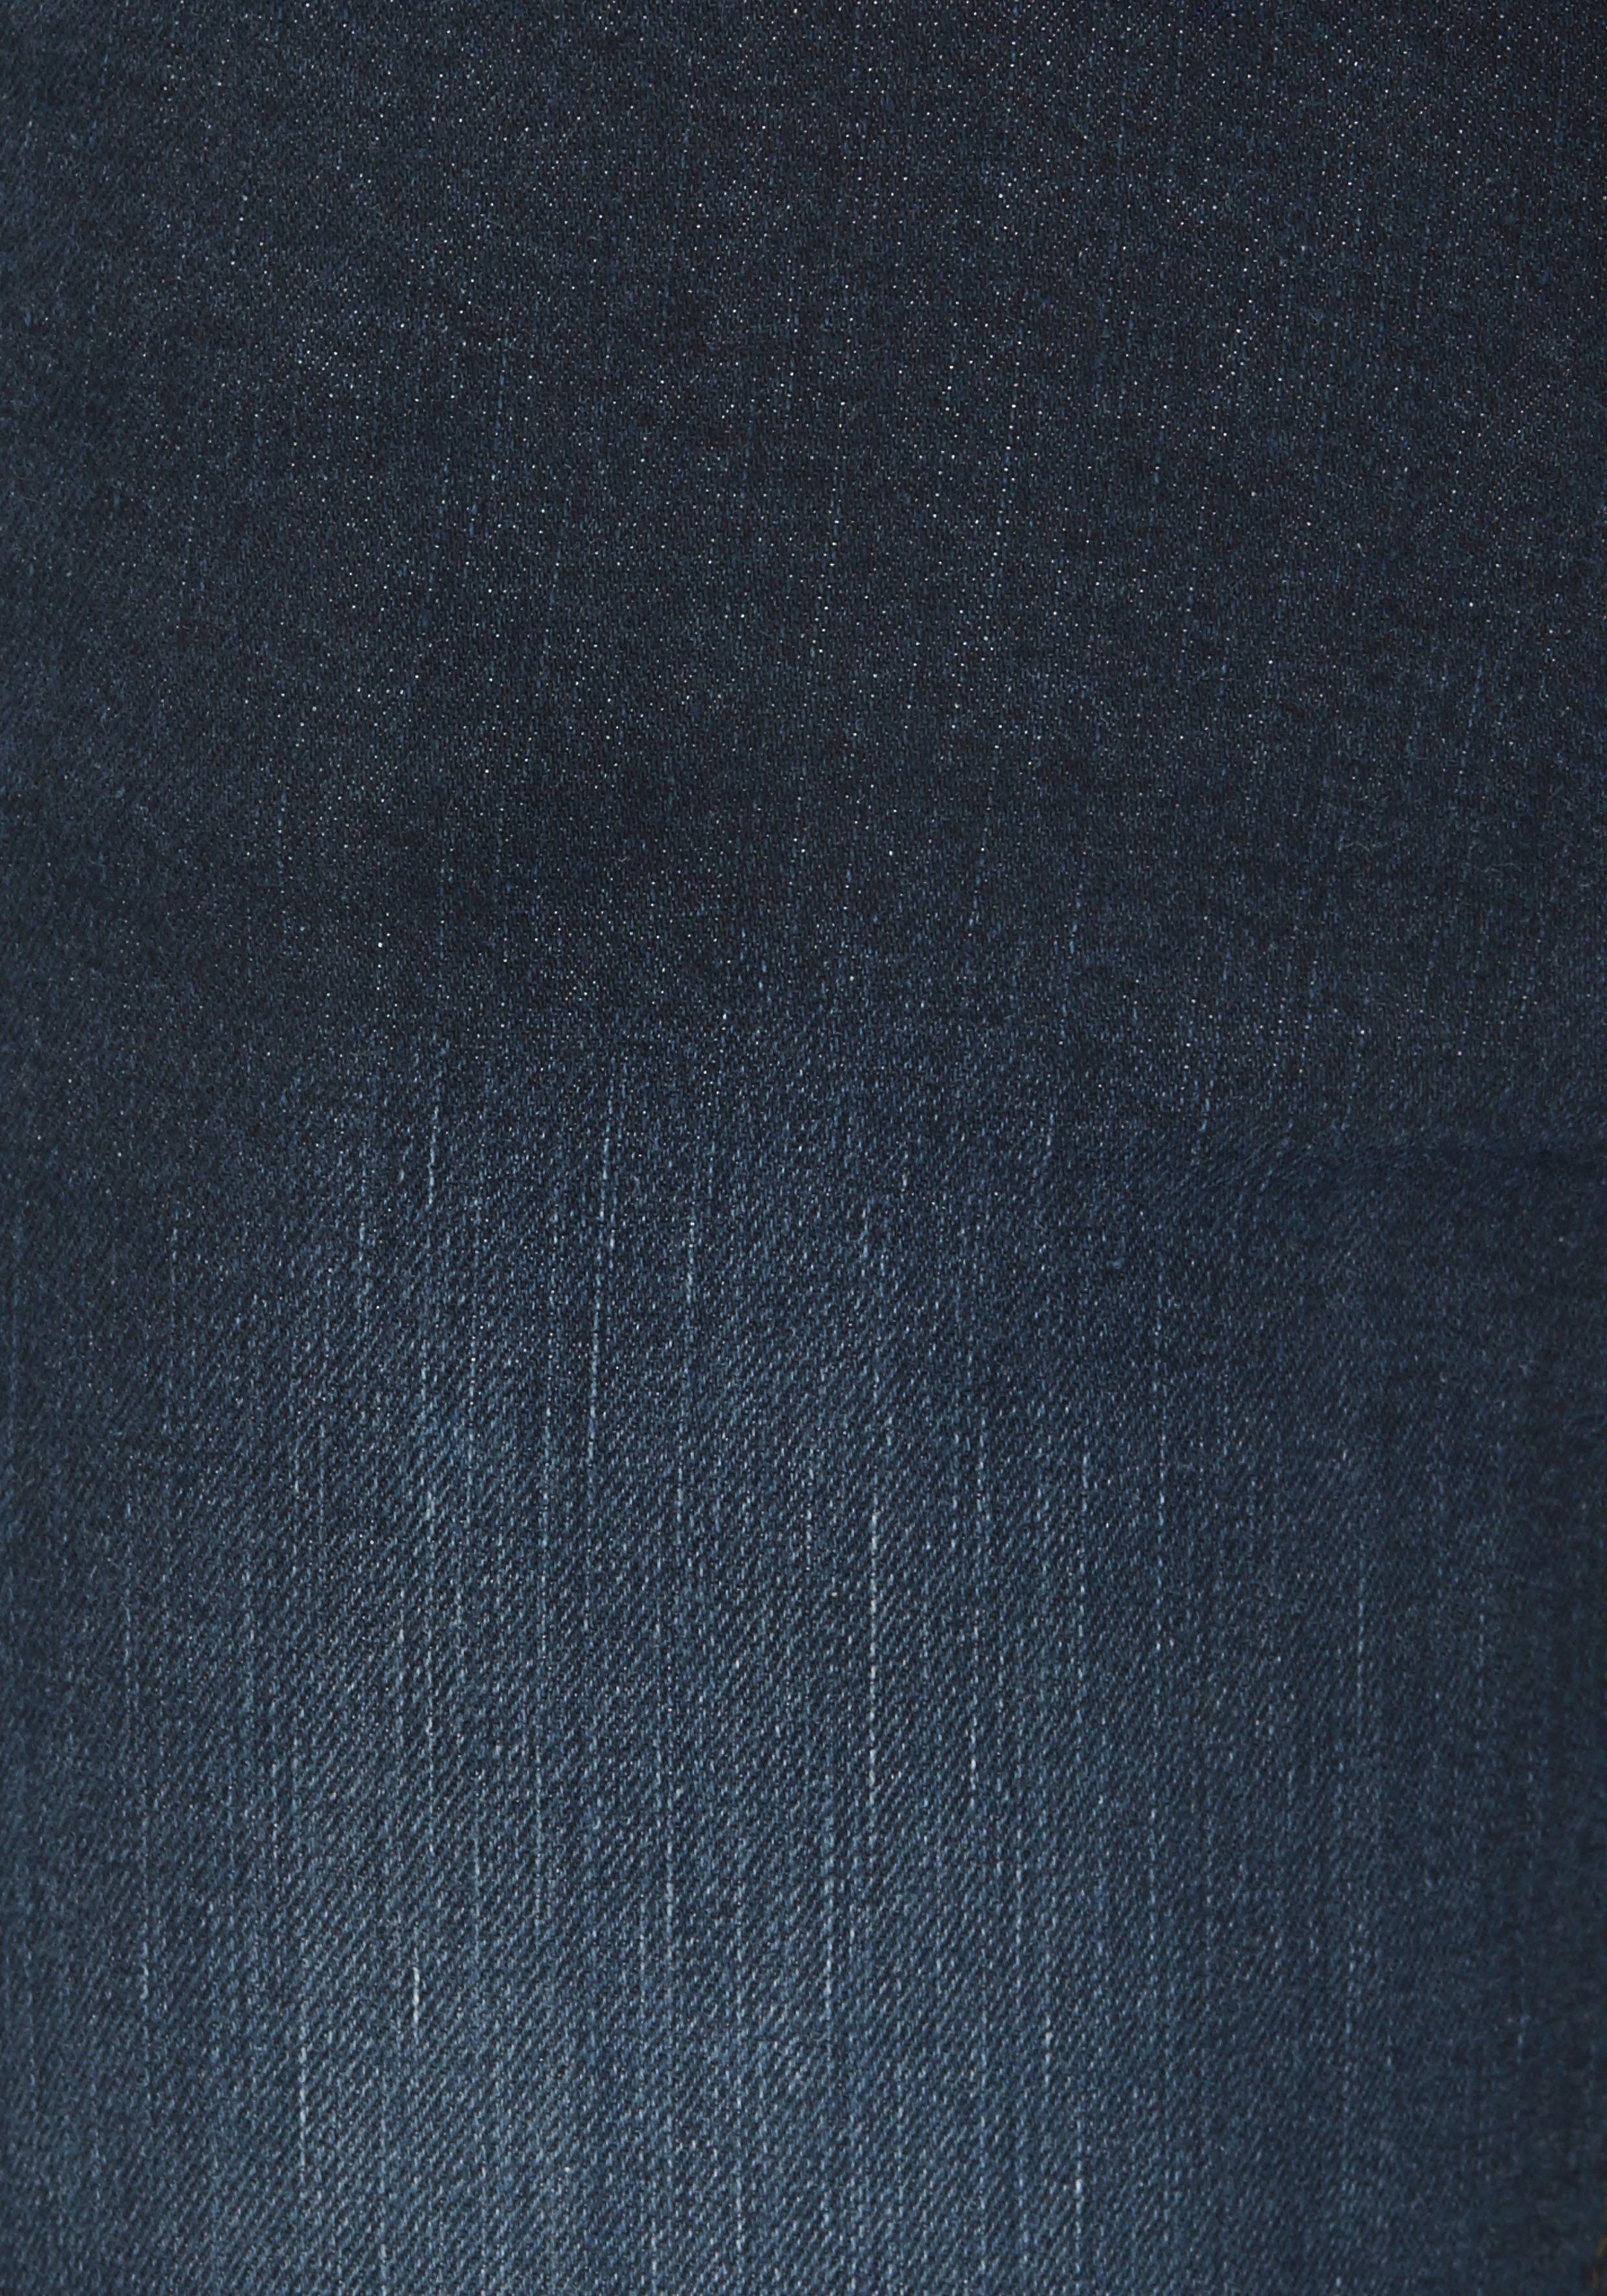 Waist Bootcut-Jeans Bund High mit Arizona Gummizugeinsatz seitlichem dark-blue-used